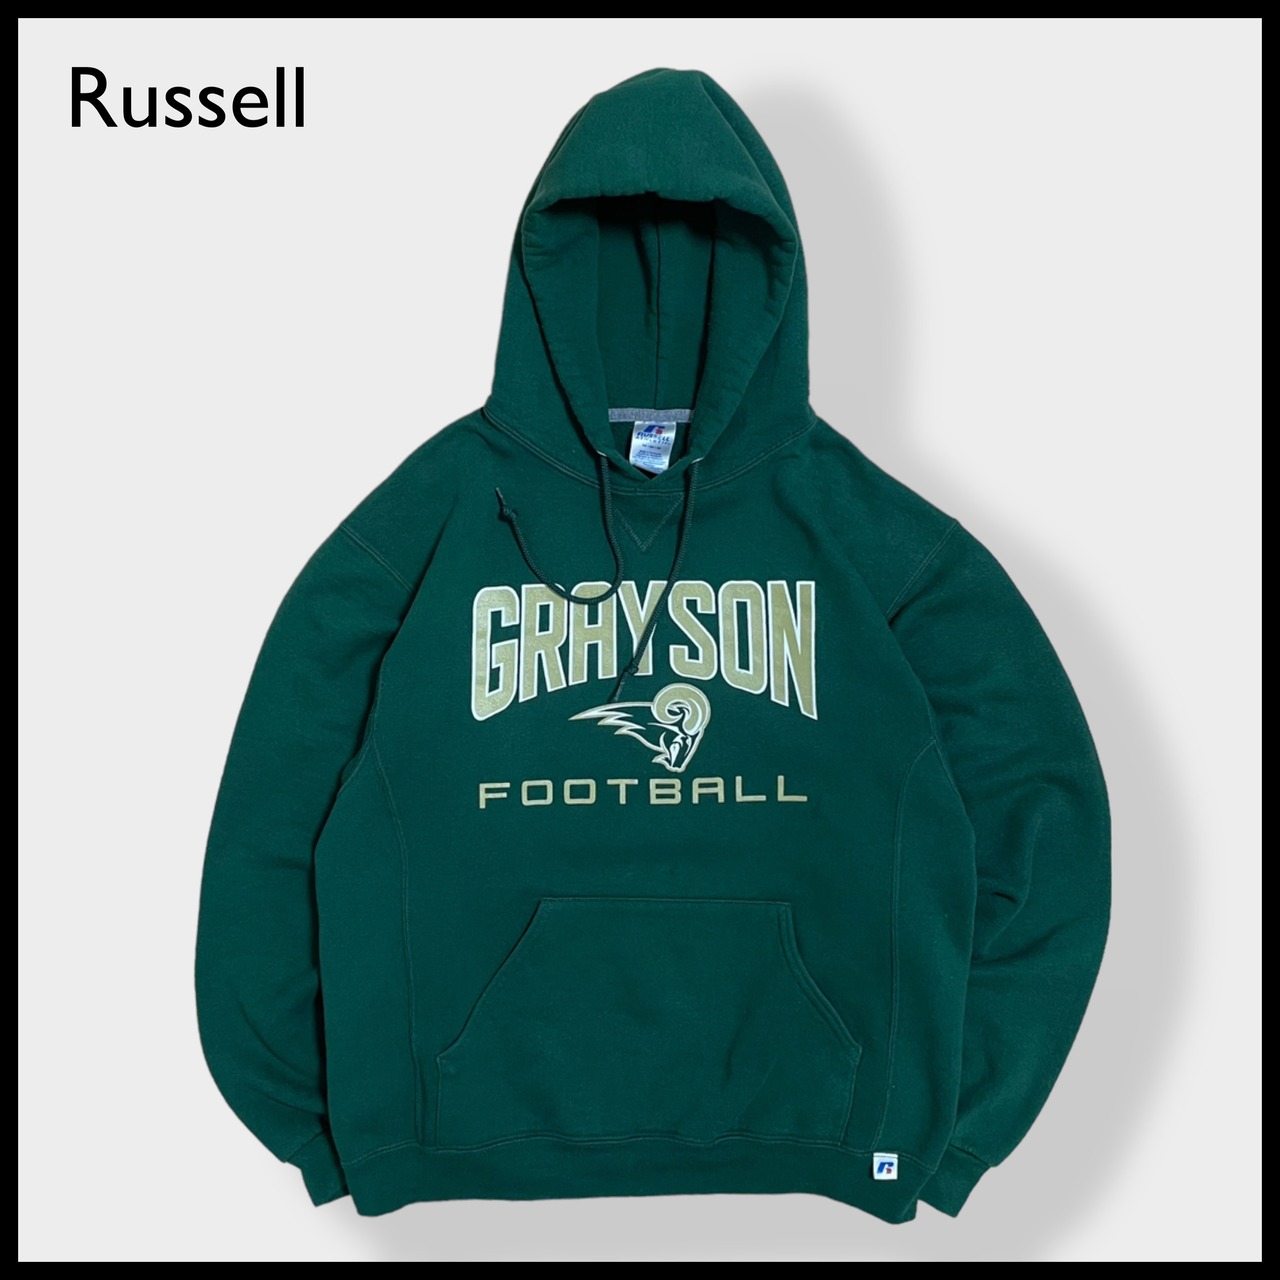 【Russell】グレイソン高校 フットボール アメフト部GRAYSON FOOTBALL ロゴ バックプリント ナンバリング パーカー スウェット フーディー hoodie M ディープグリーン  us古着